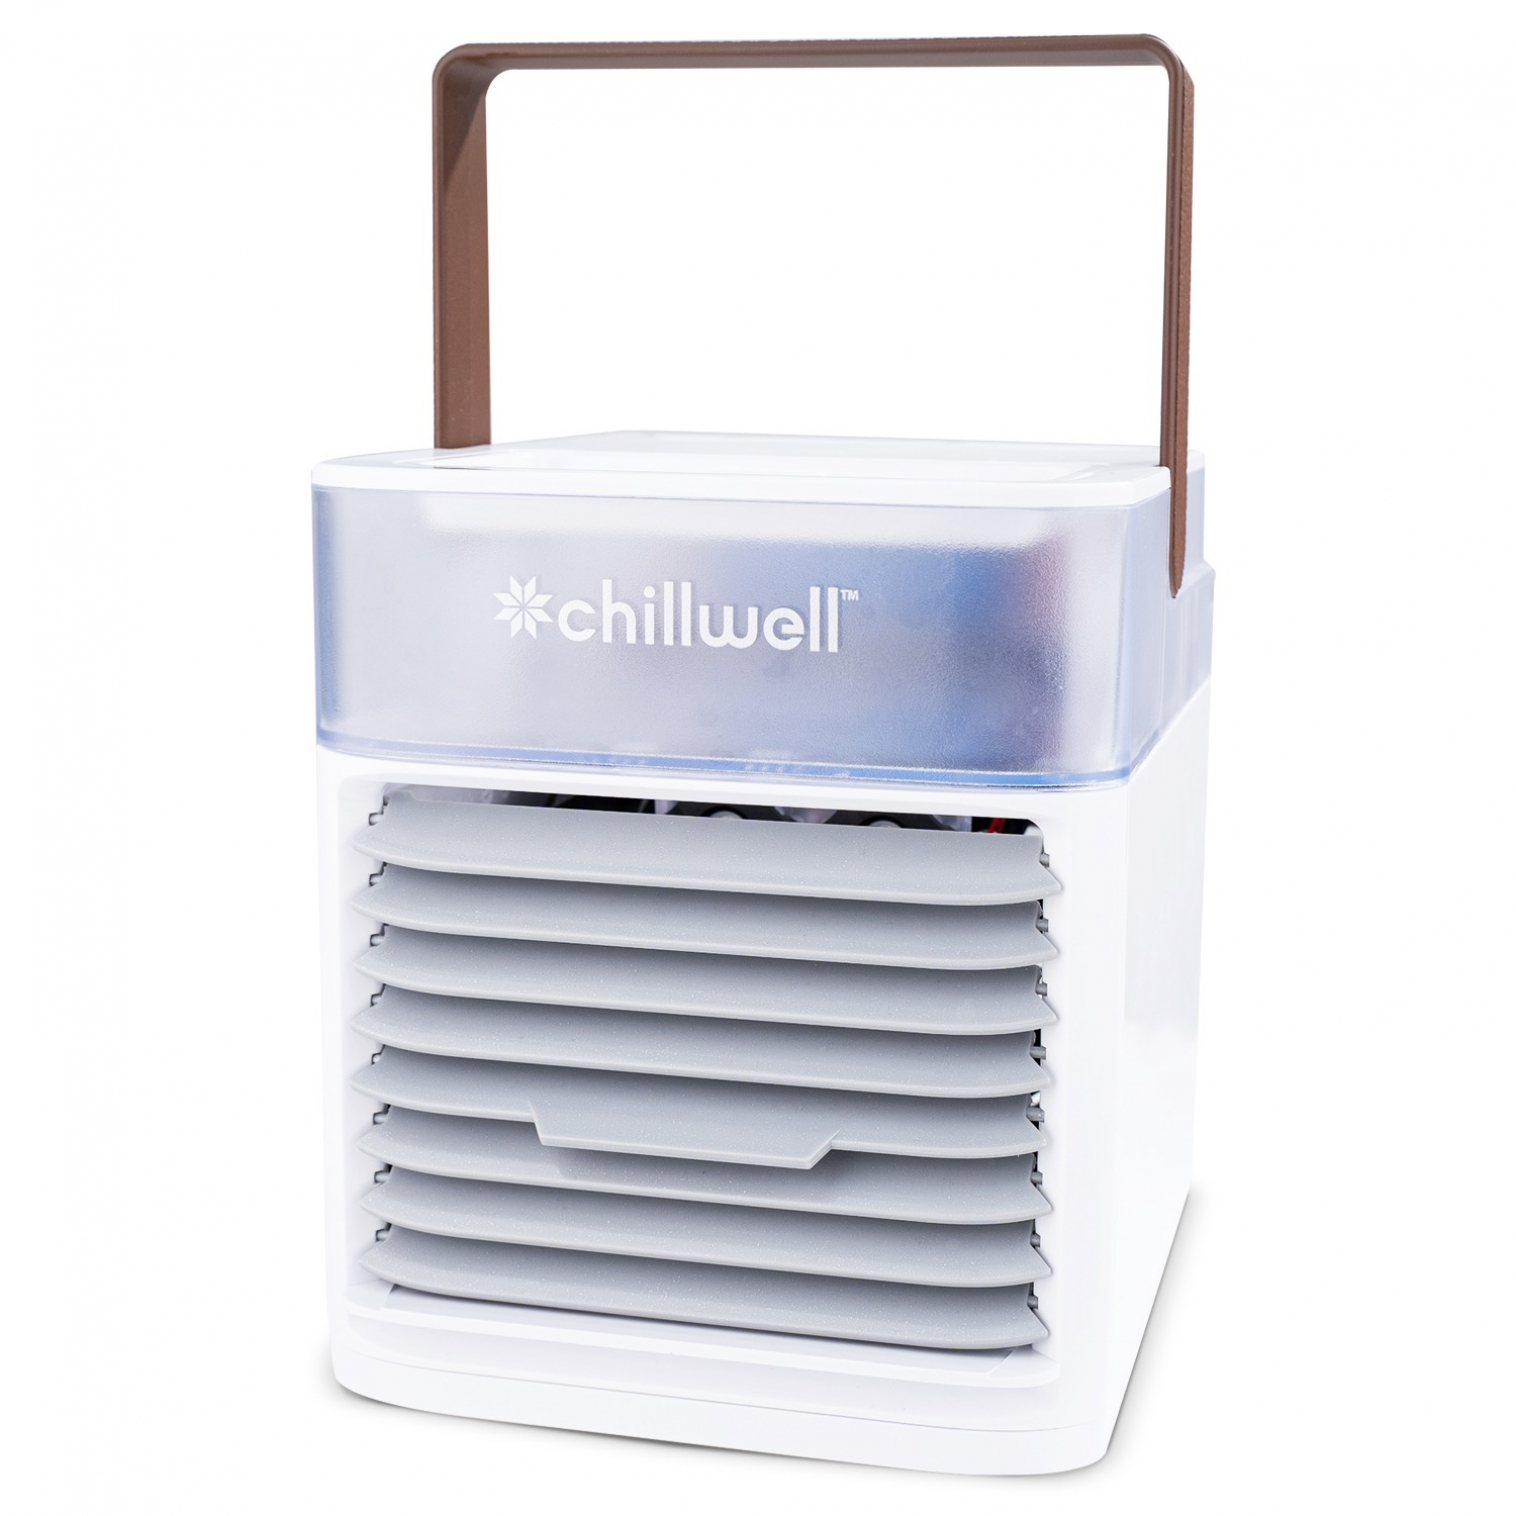 Chillwell AC Mini Air Conditioner